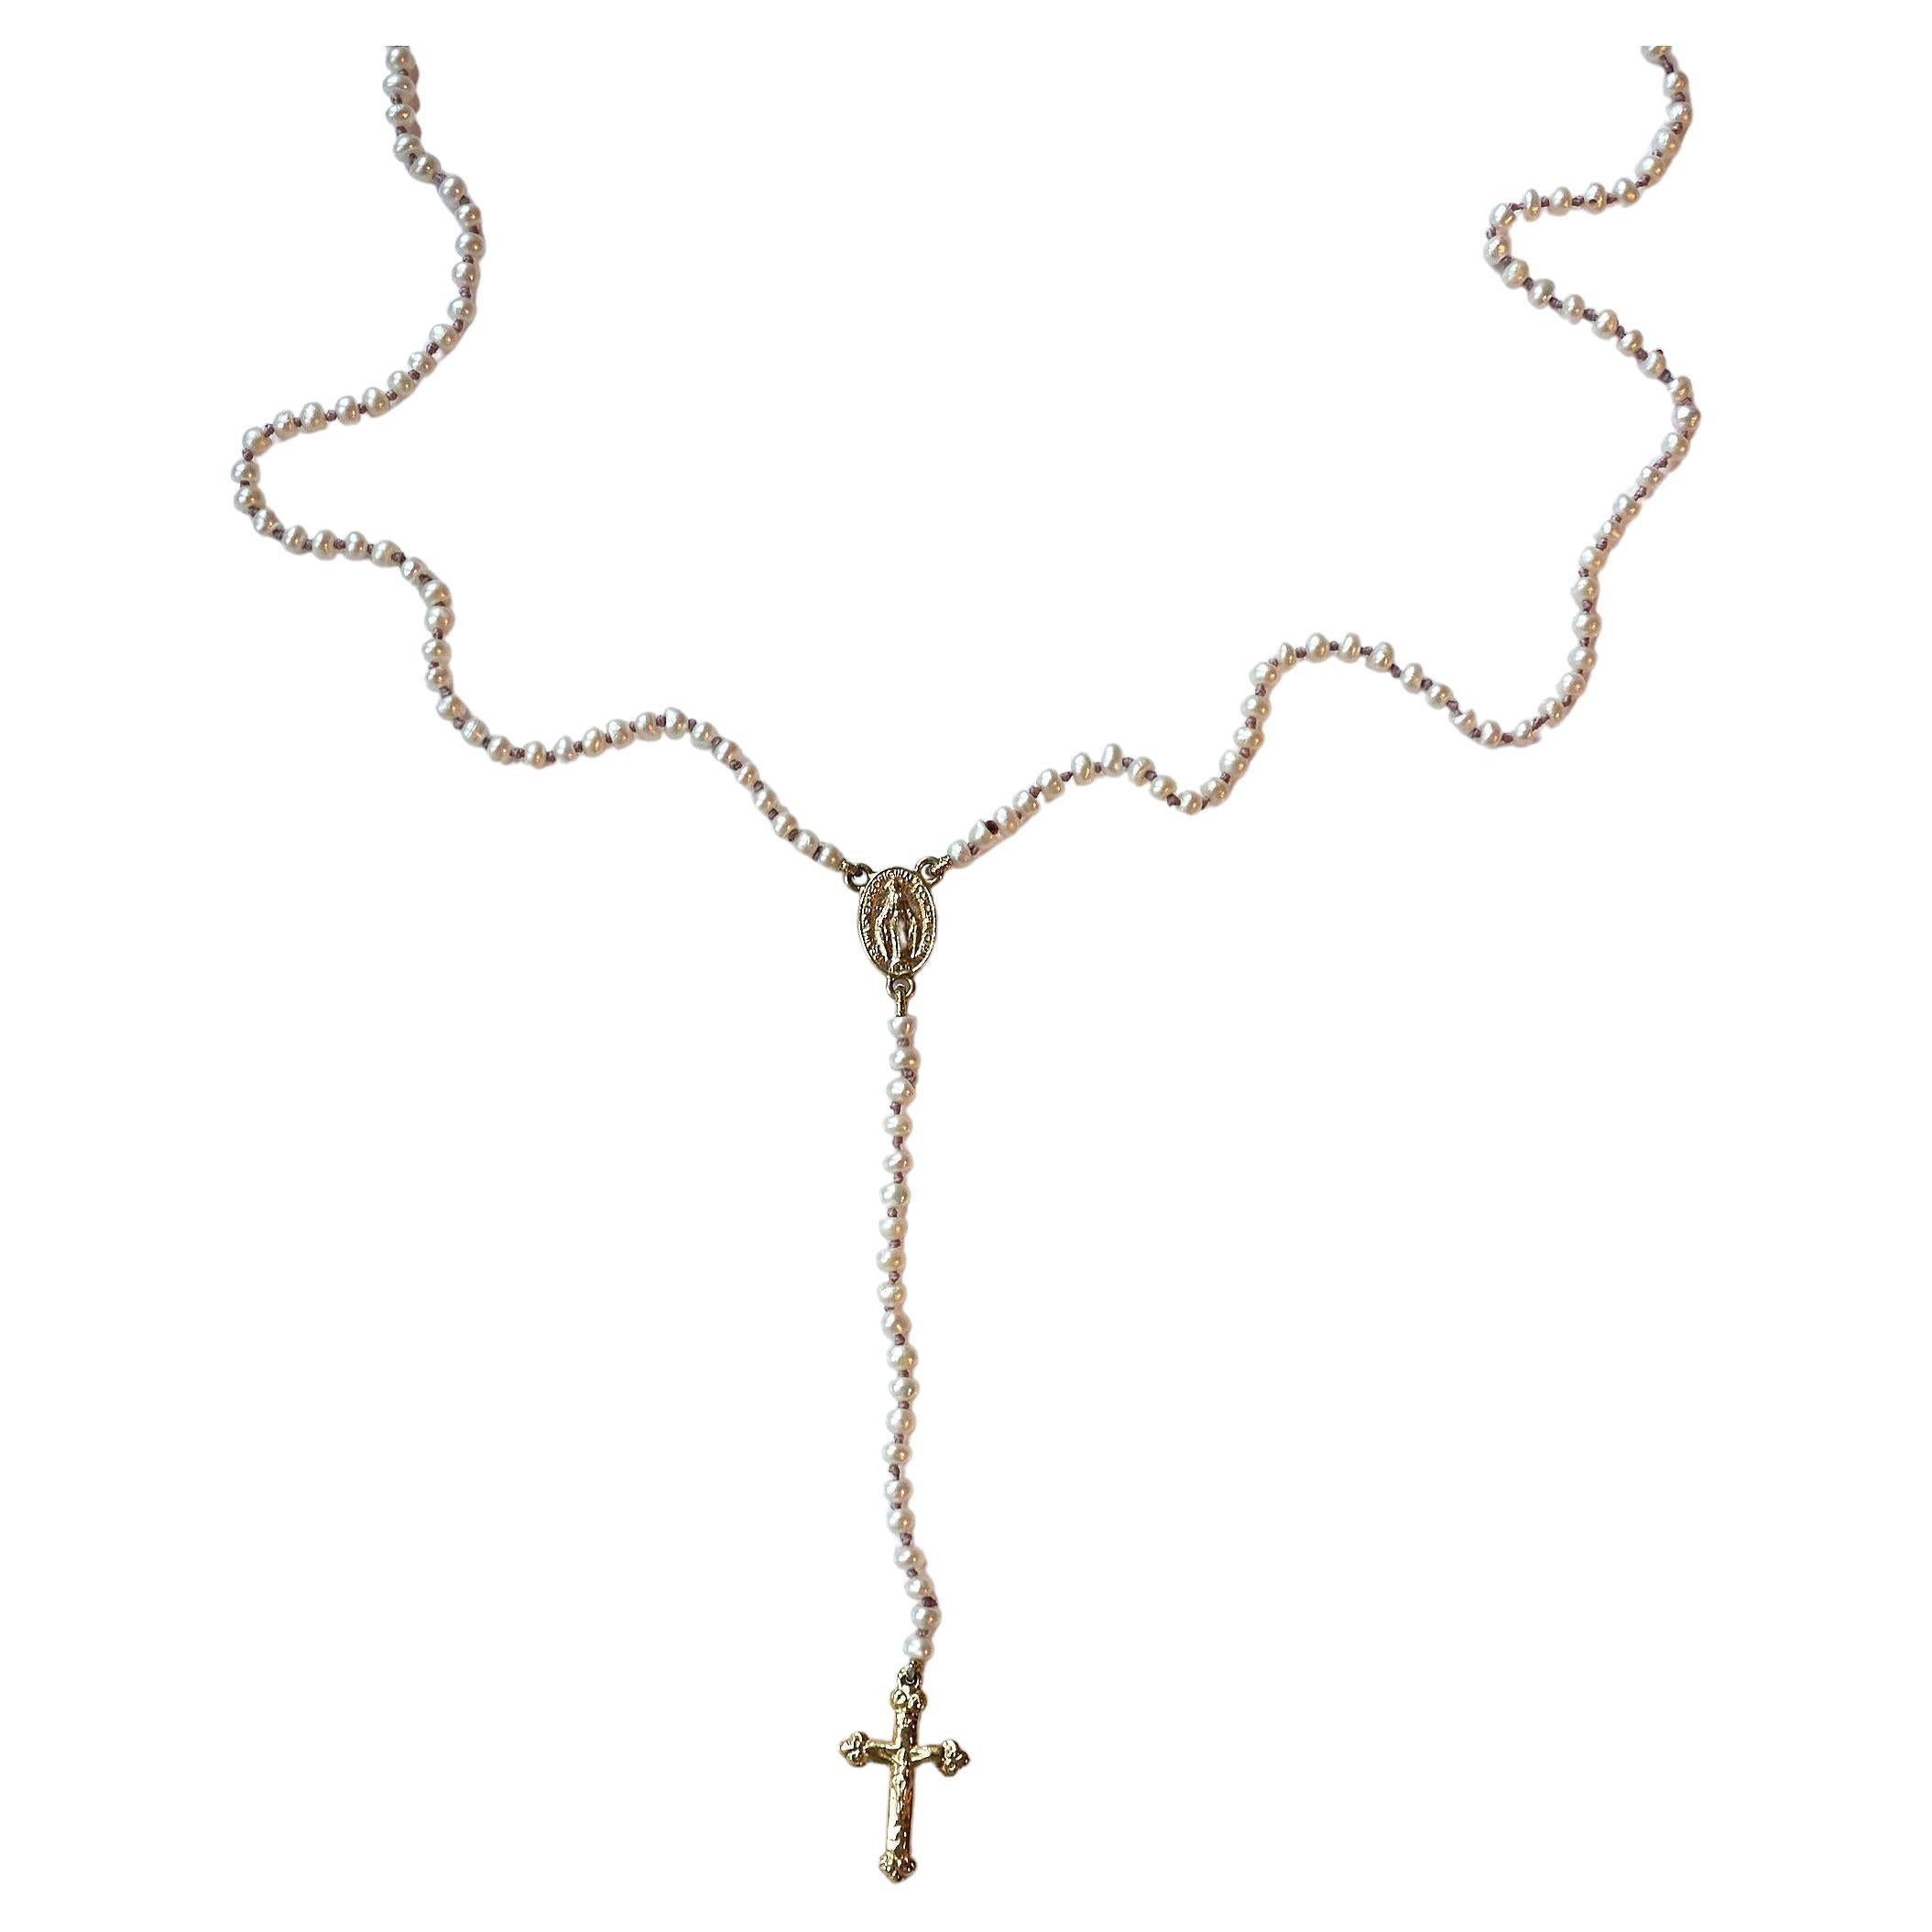 Rosario Weiß Perle Kruzifix Kreuz Jungfrau Maria 14k Gold religiöse Halskette

Symbole oder Medaillen können zu einem mächtigen Werkzeug in unserem Arsenal für das Spirituelle werden. 
Seit dem Altertum werden spirituelle Anhänger und religiöse